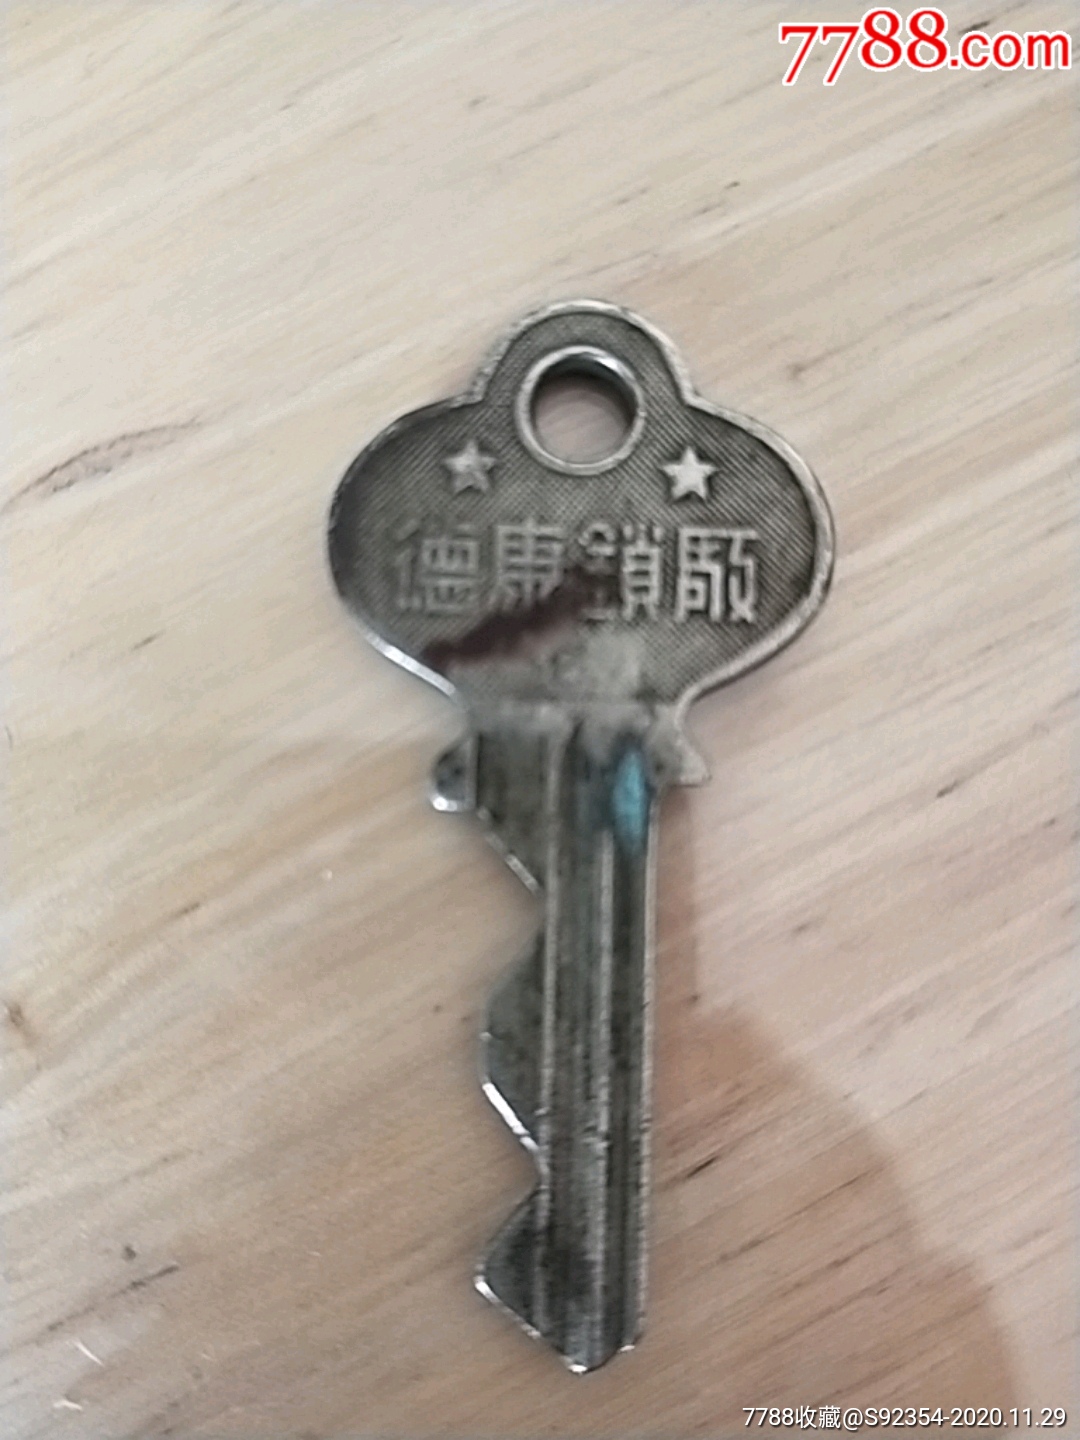 老铜钥匙,(德康锁厂)_铜锁/铜钥匙_图片价格_收藏价值